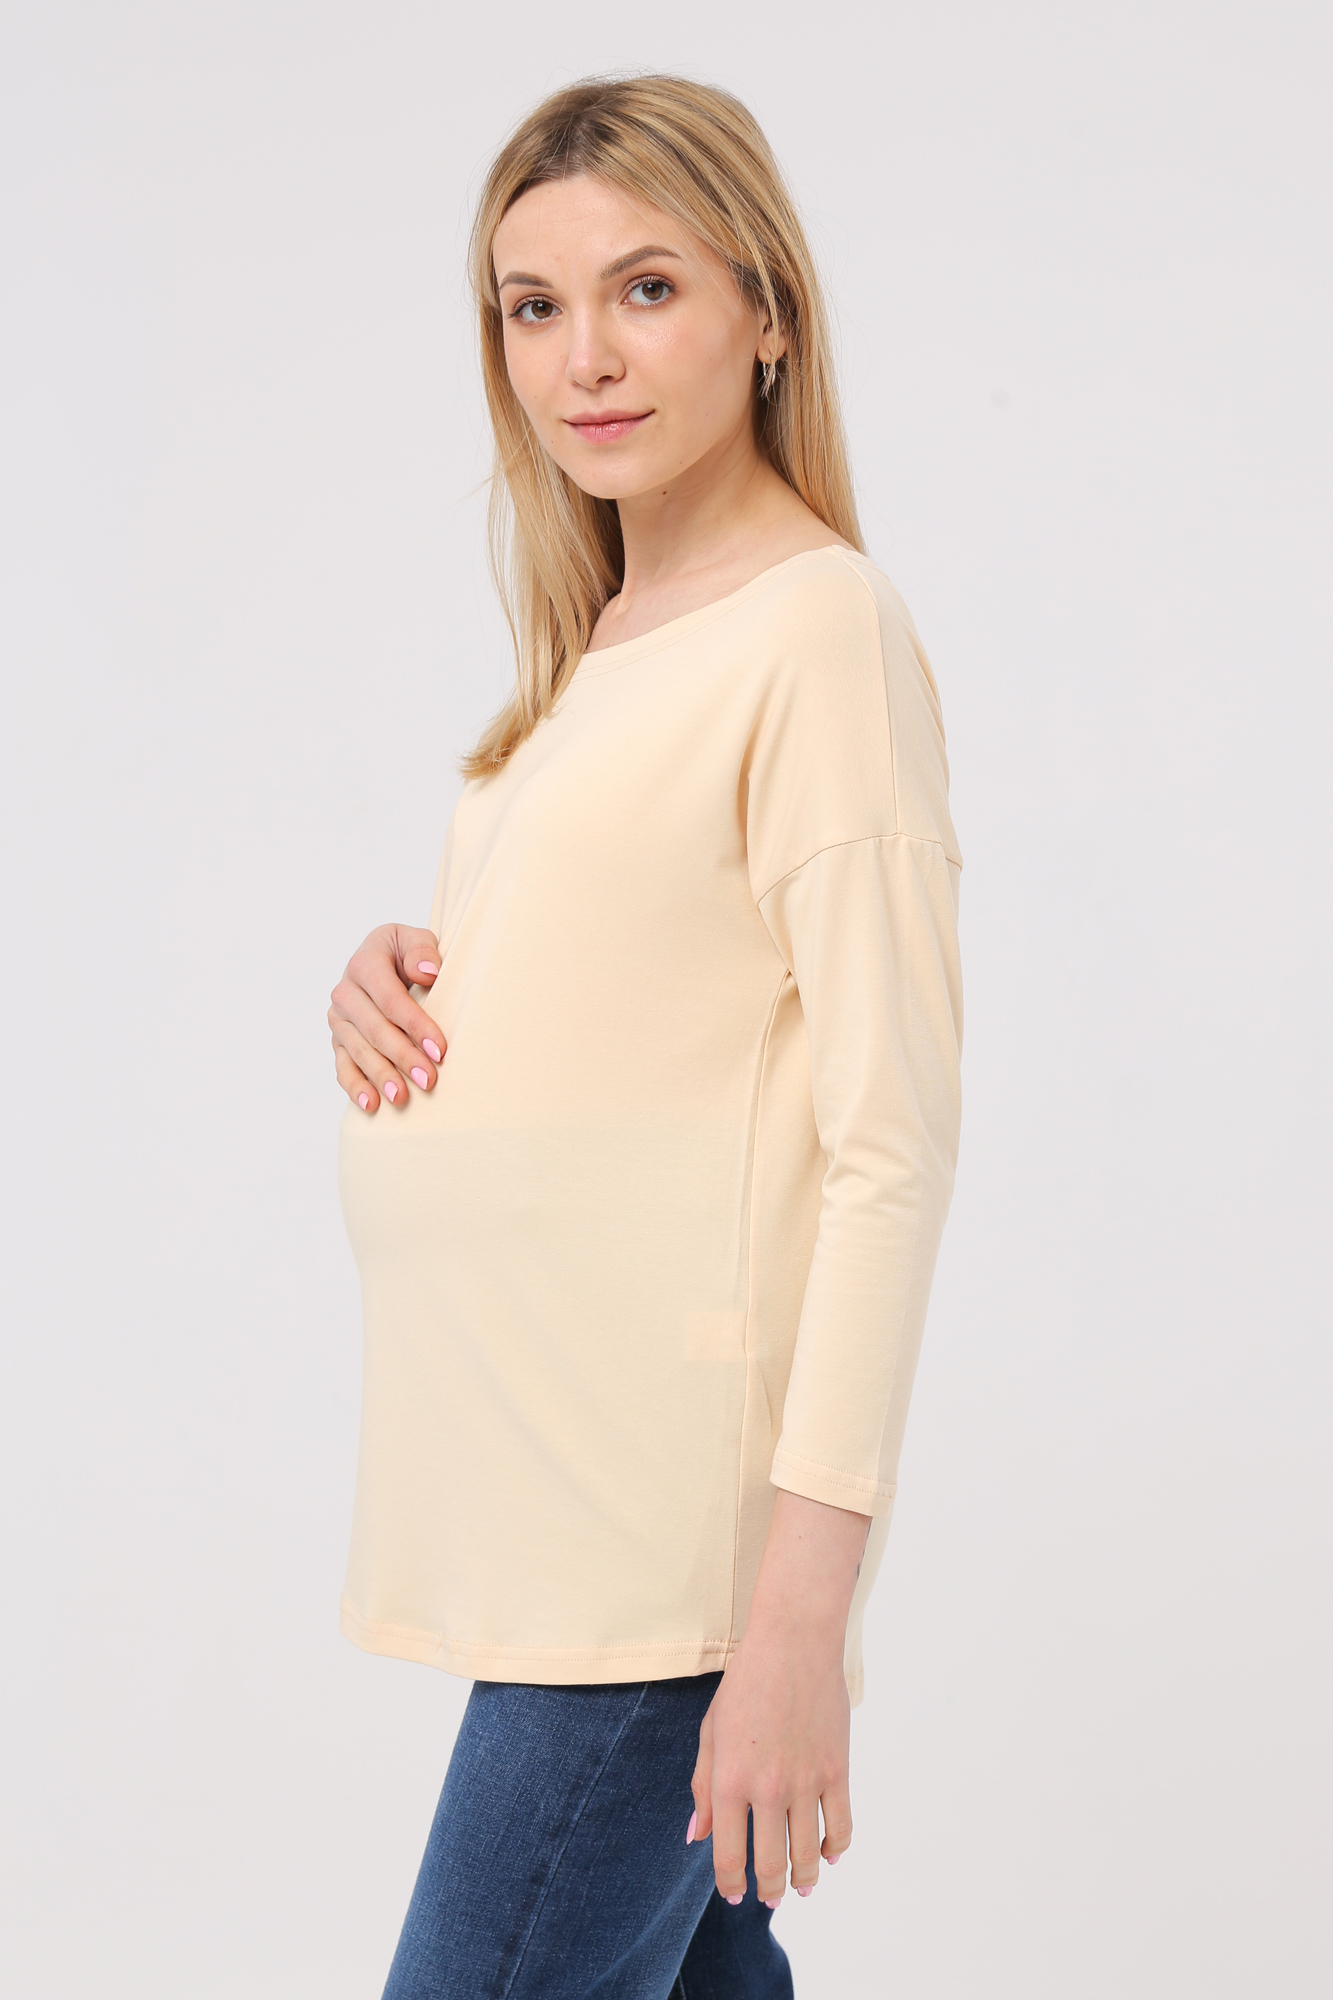 Лонгслив для беременных женский Mama's fantasy 1709MF желтый 42 RU